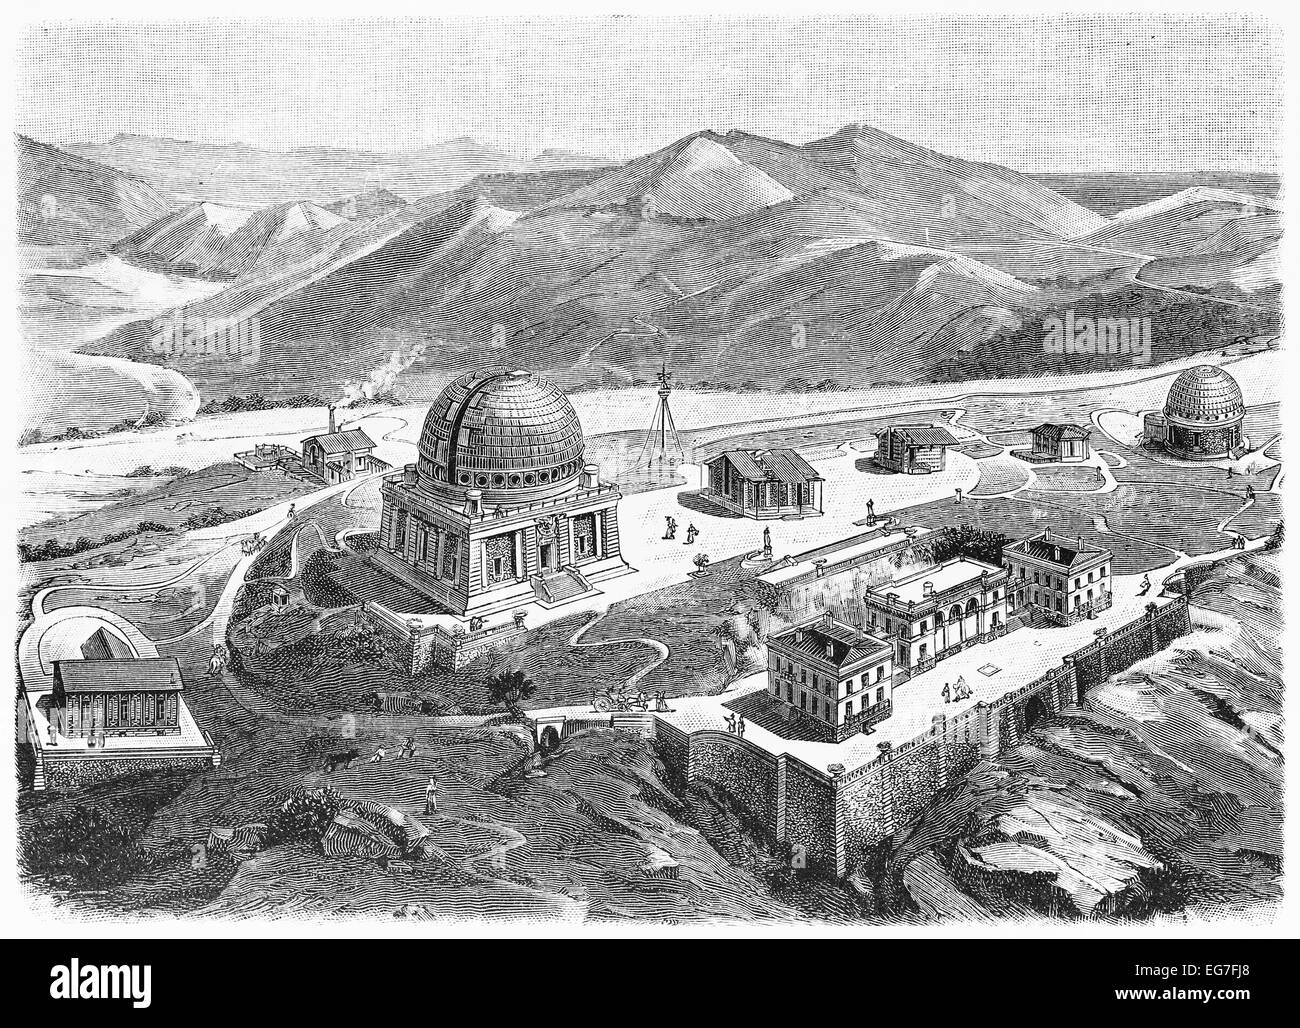 Dessin vintage de Nice observatoire astronomique au début du 20e siècle Banque D'Images